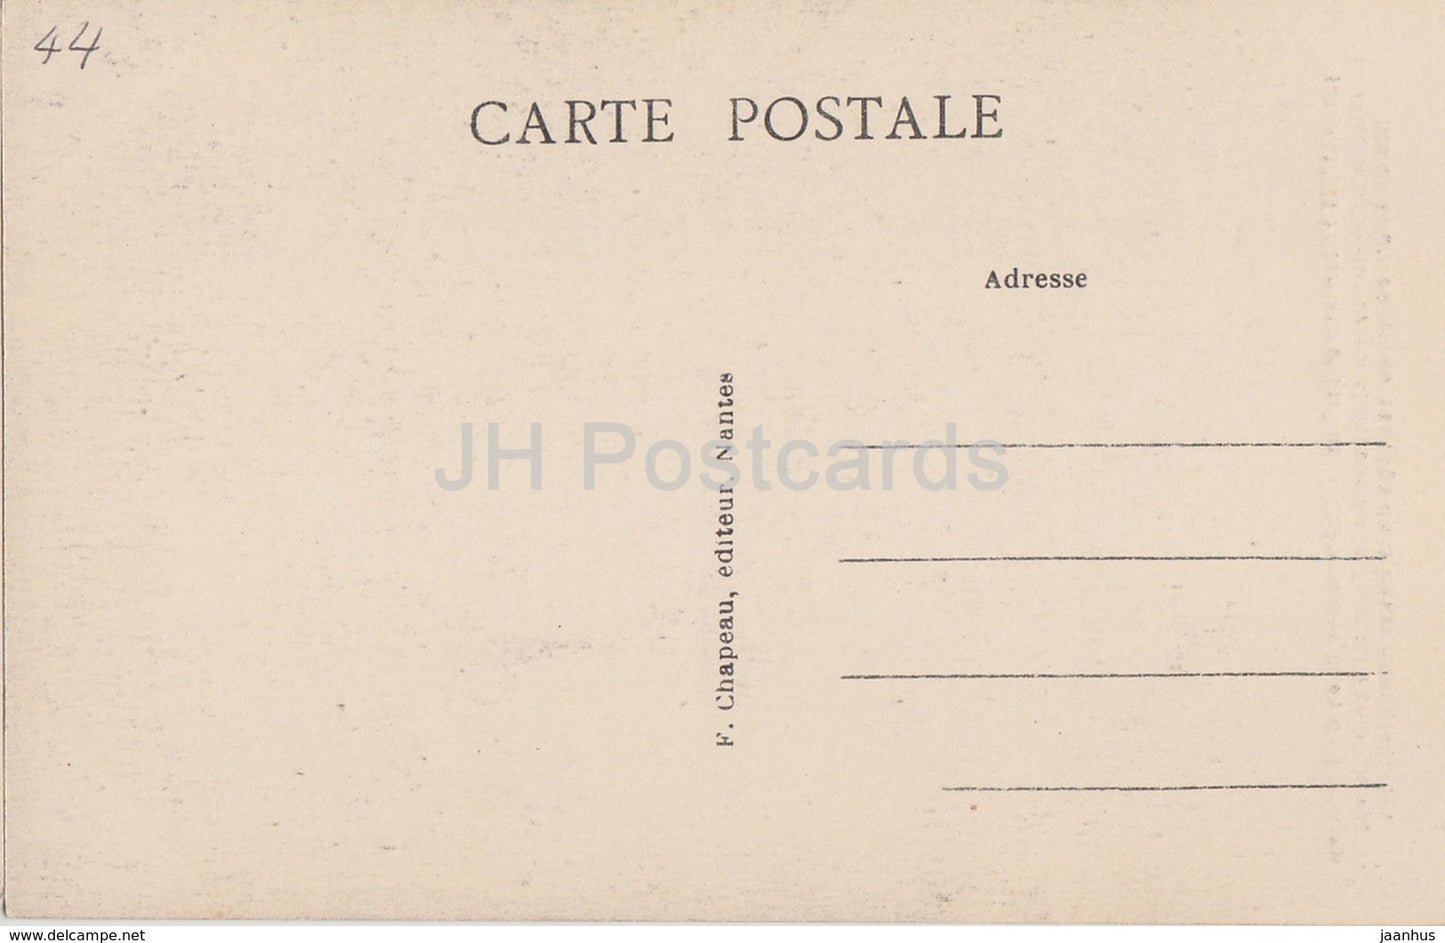 Nantes - Pittoresque et Curieux - Chateau des Ducs de Bretagne - Schloss - 169 - alte Postkarte - Frankreich - unbenutzt